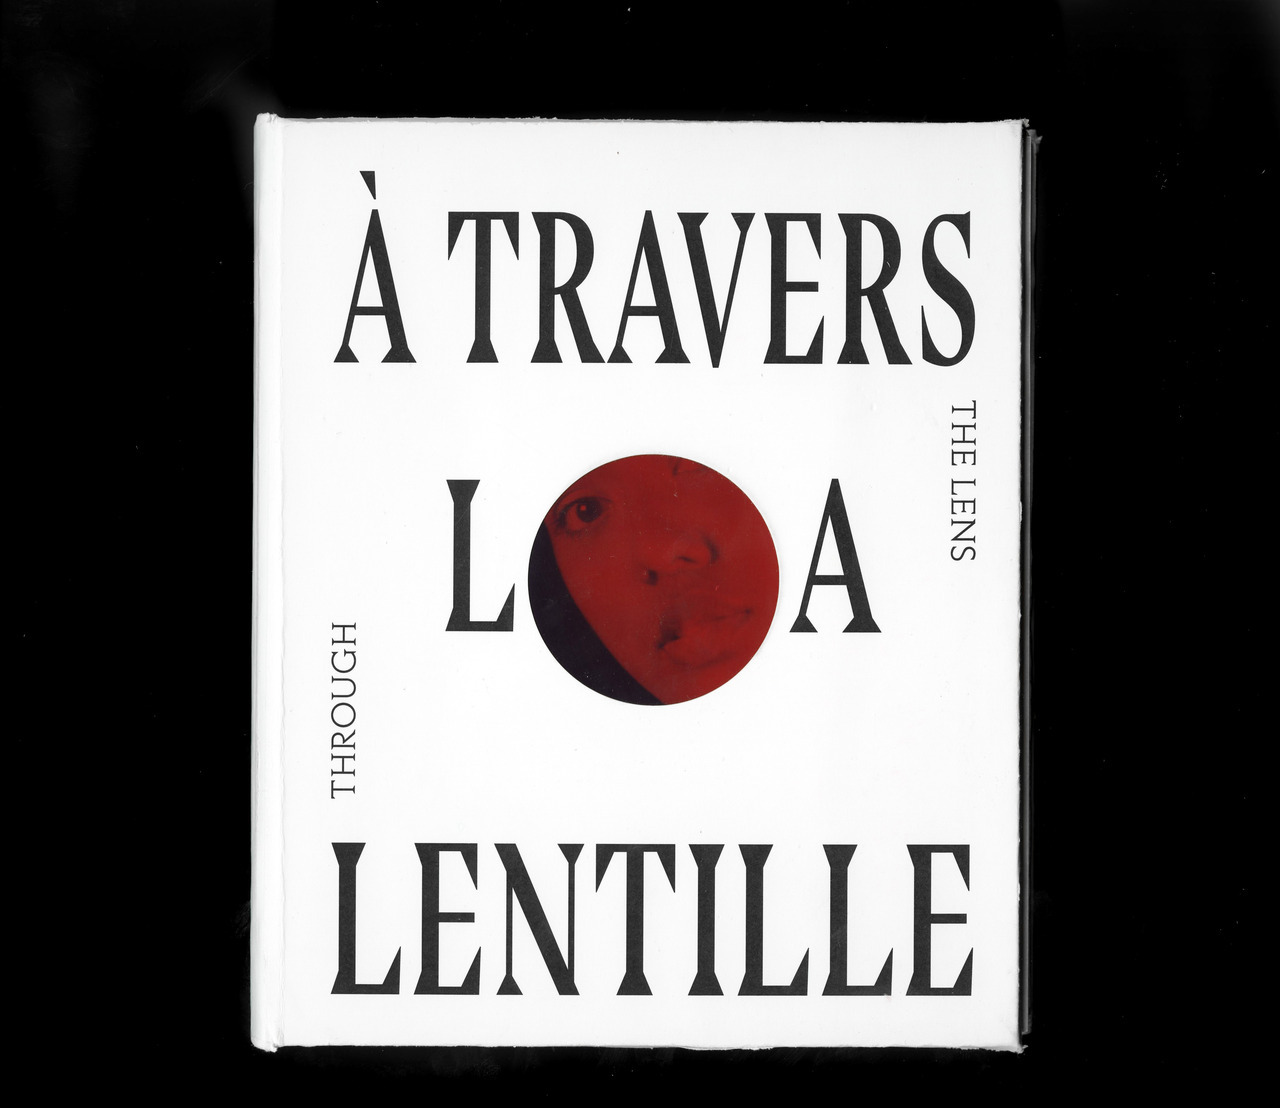 HAGAR MOUSSALI - A Travers la Lentille - Through the Lens Book...